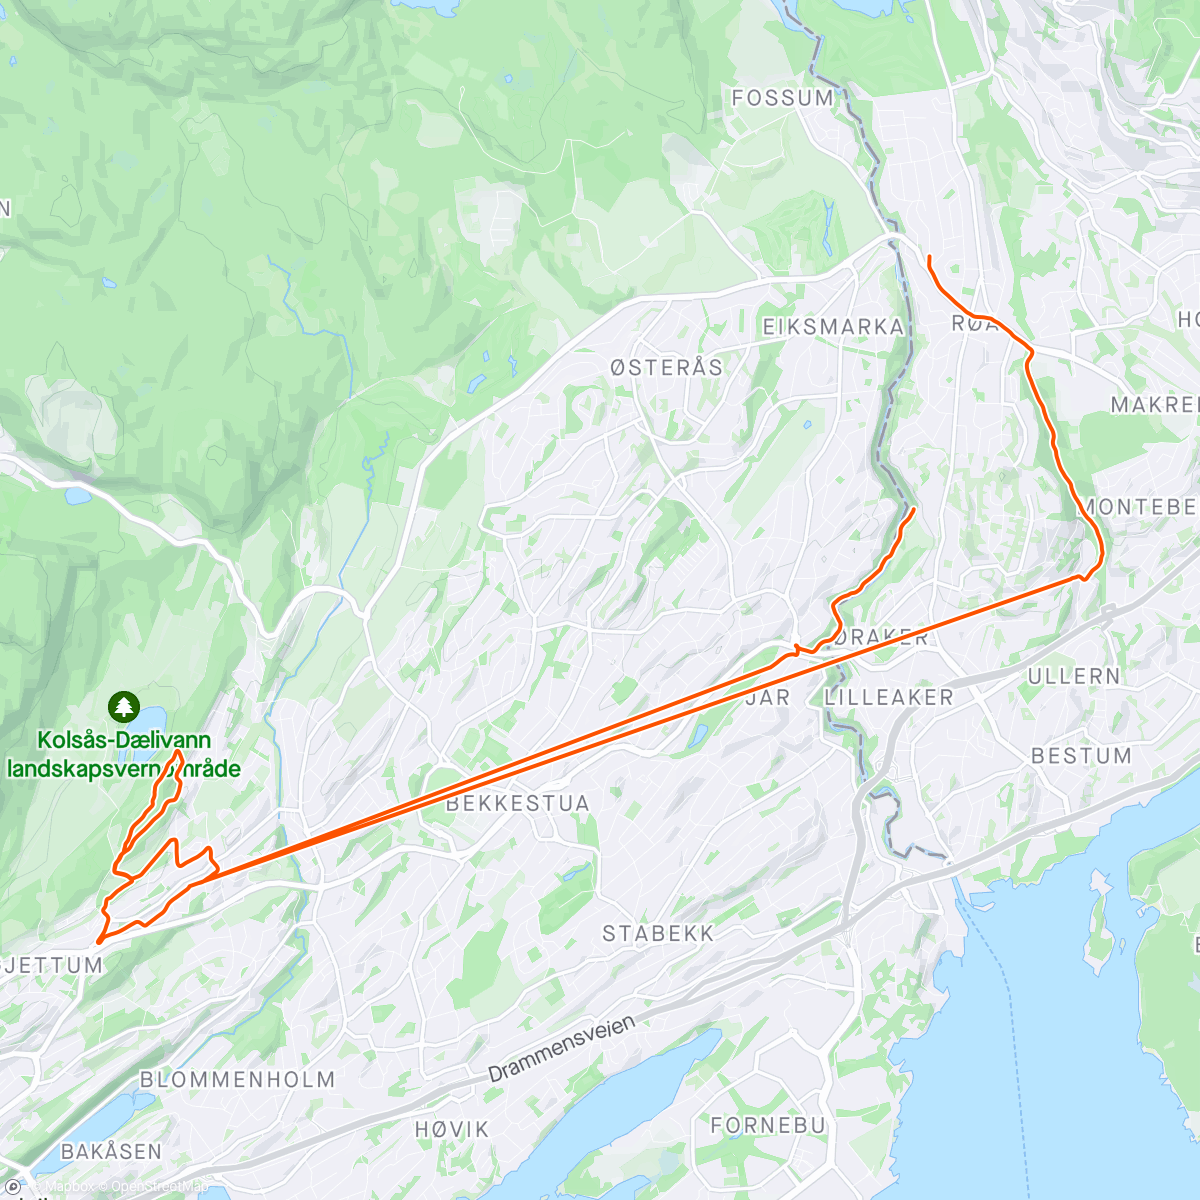 「Jobb/transport + hareoppdrag for Matilda på sykkel」活動的地圖